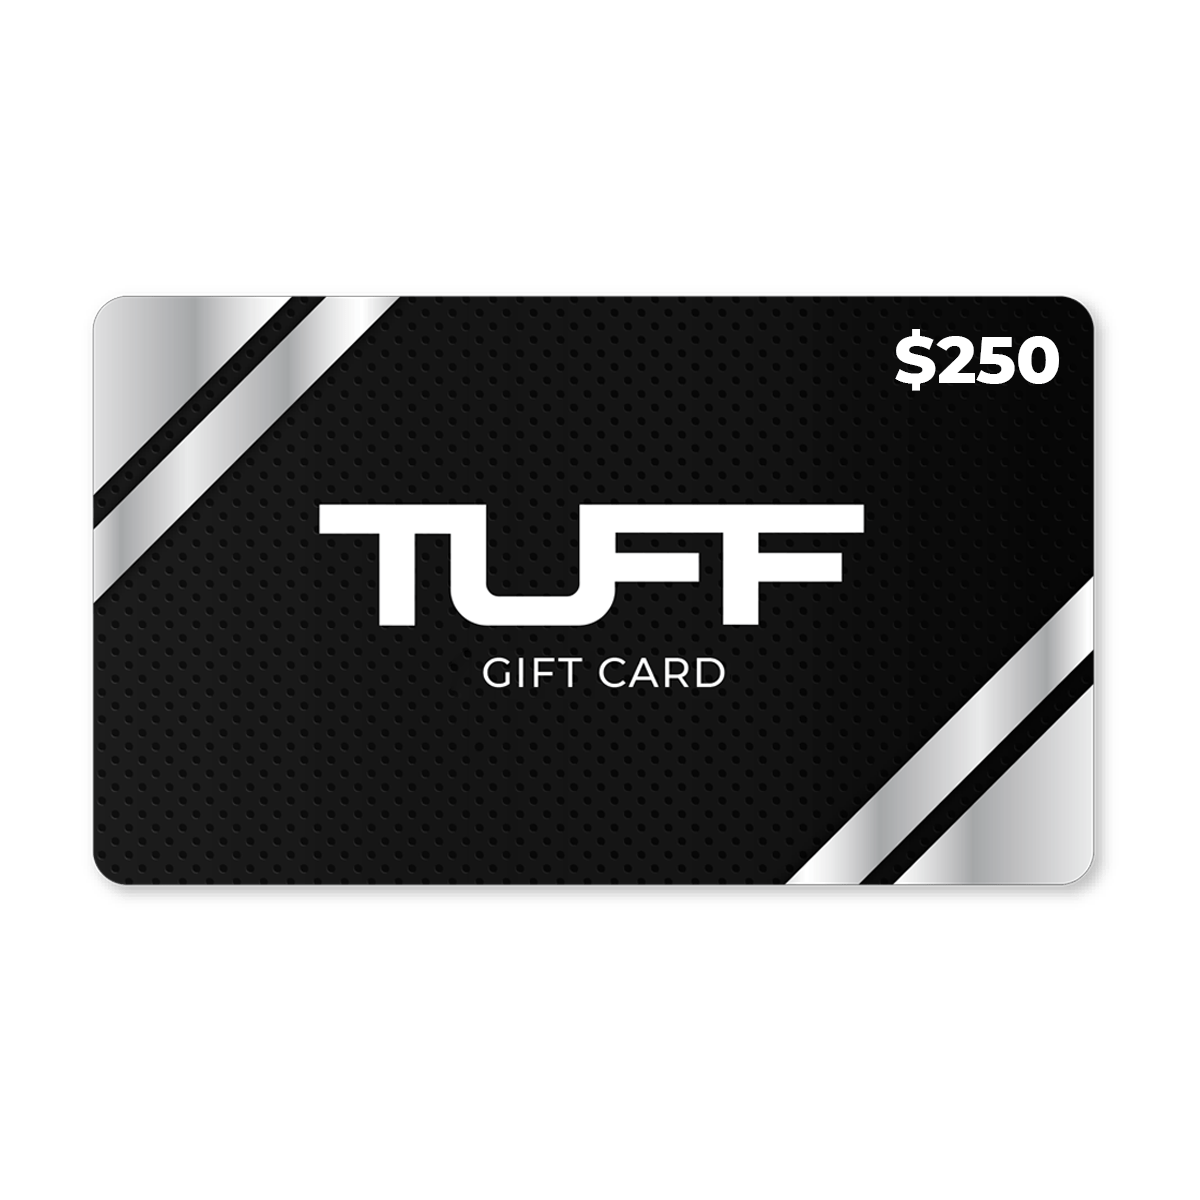 TuffWraps Gift Card $250.00 TUFF Gift Card